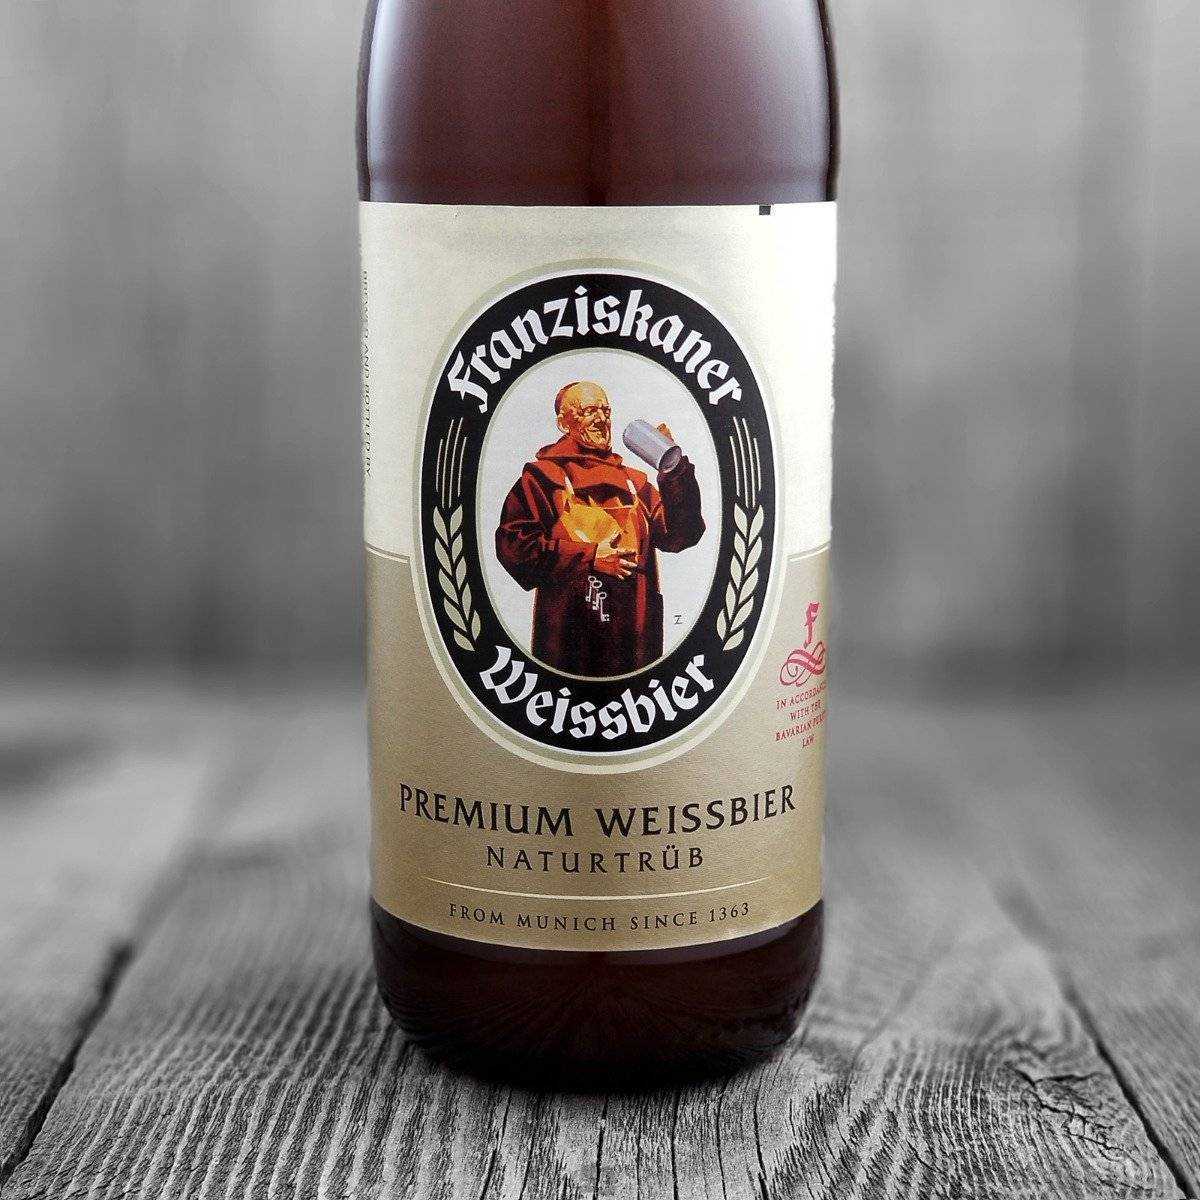 Пиво францисканер (franziskaner): что представляет напиток и как его пьют